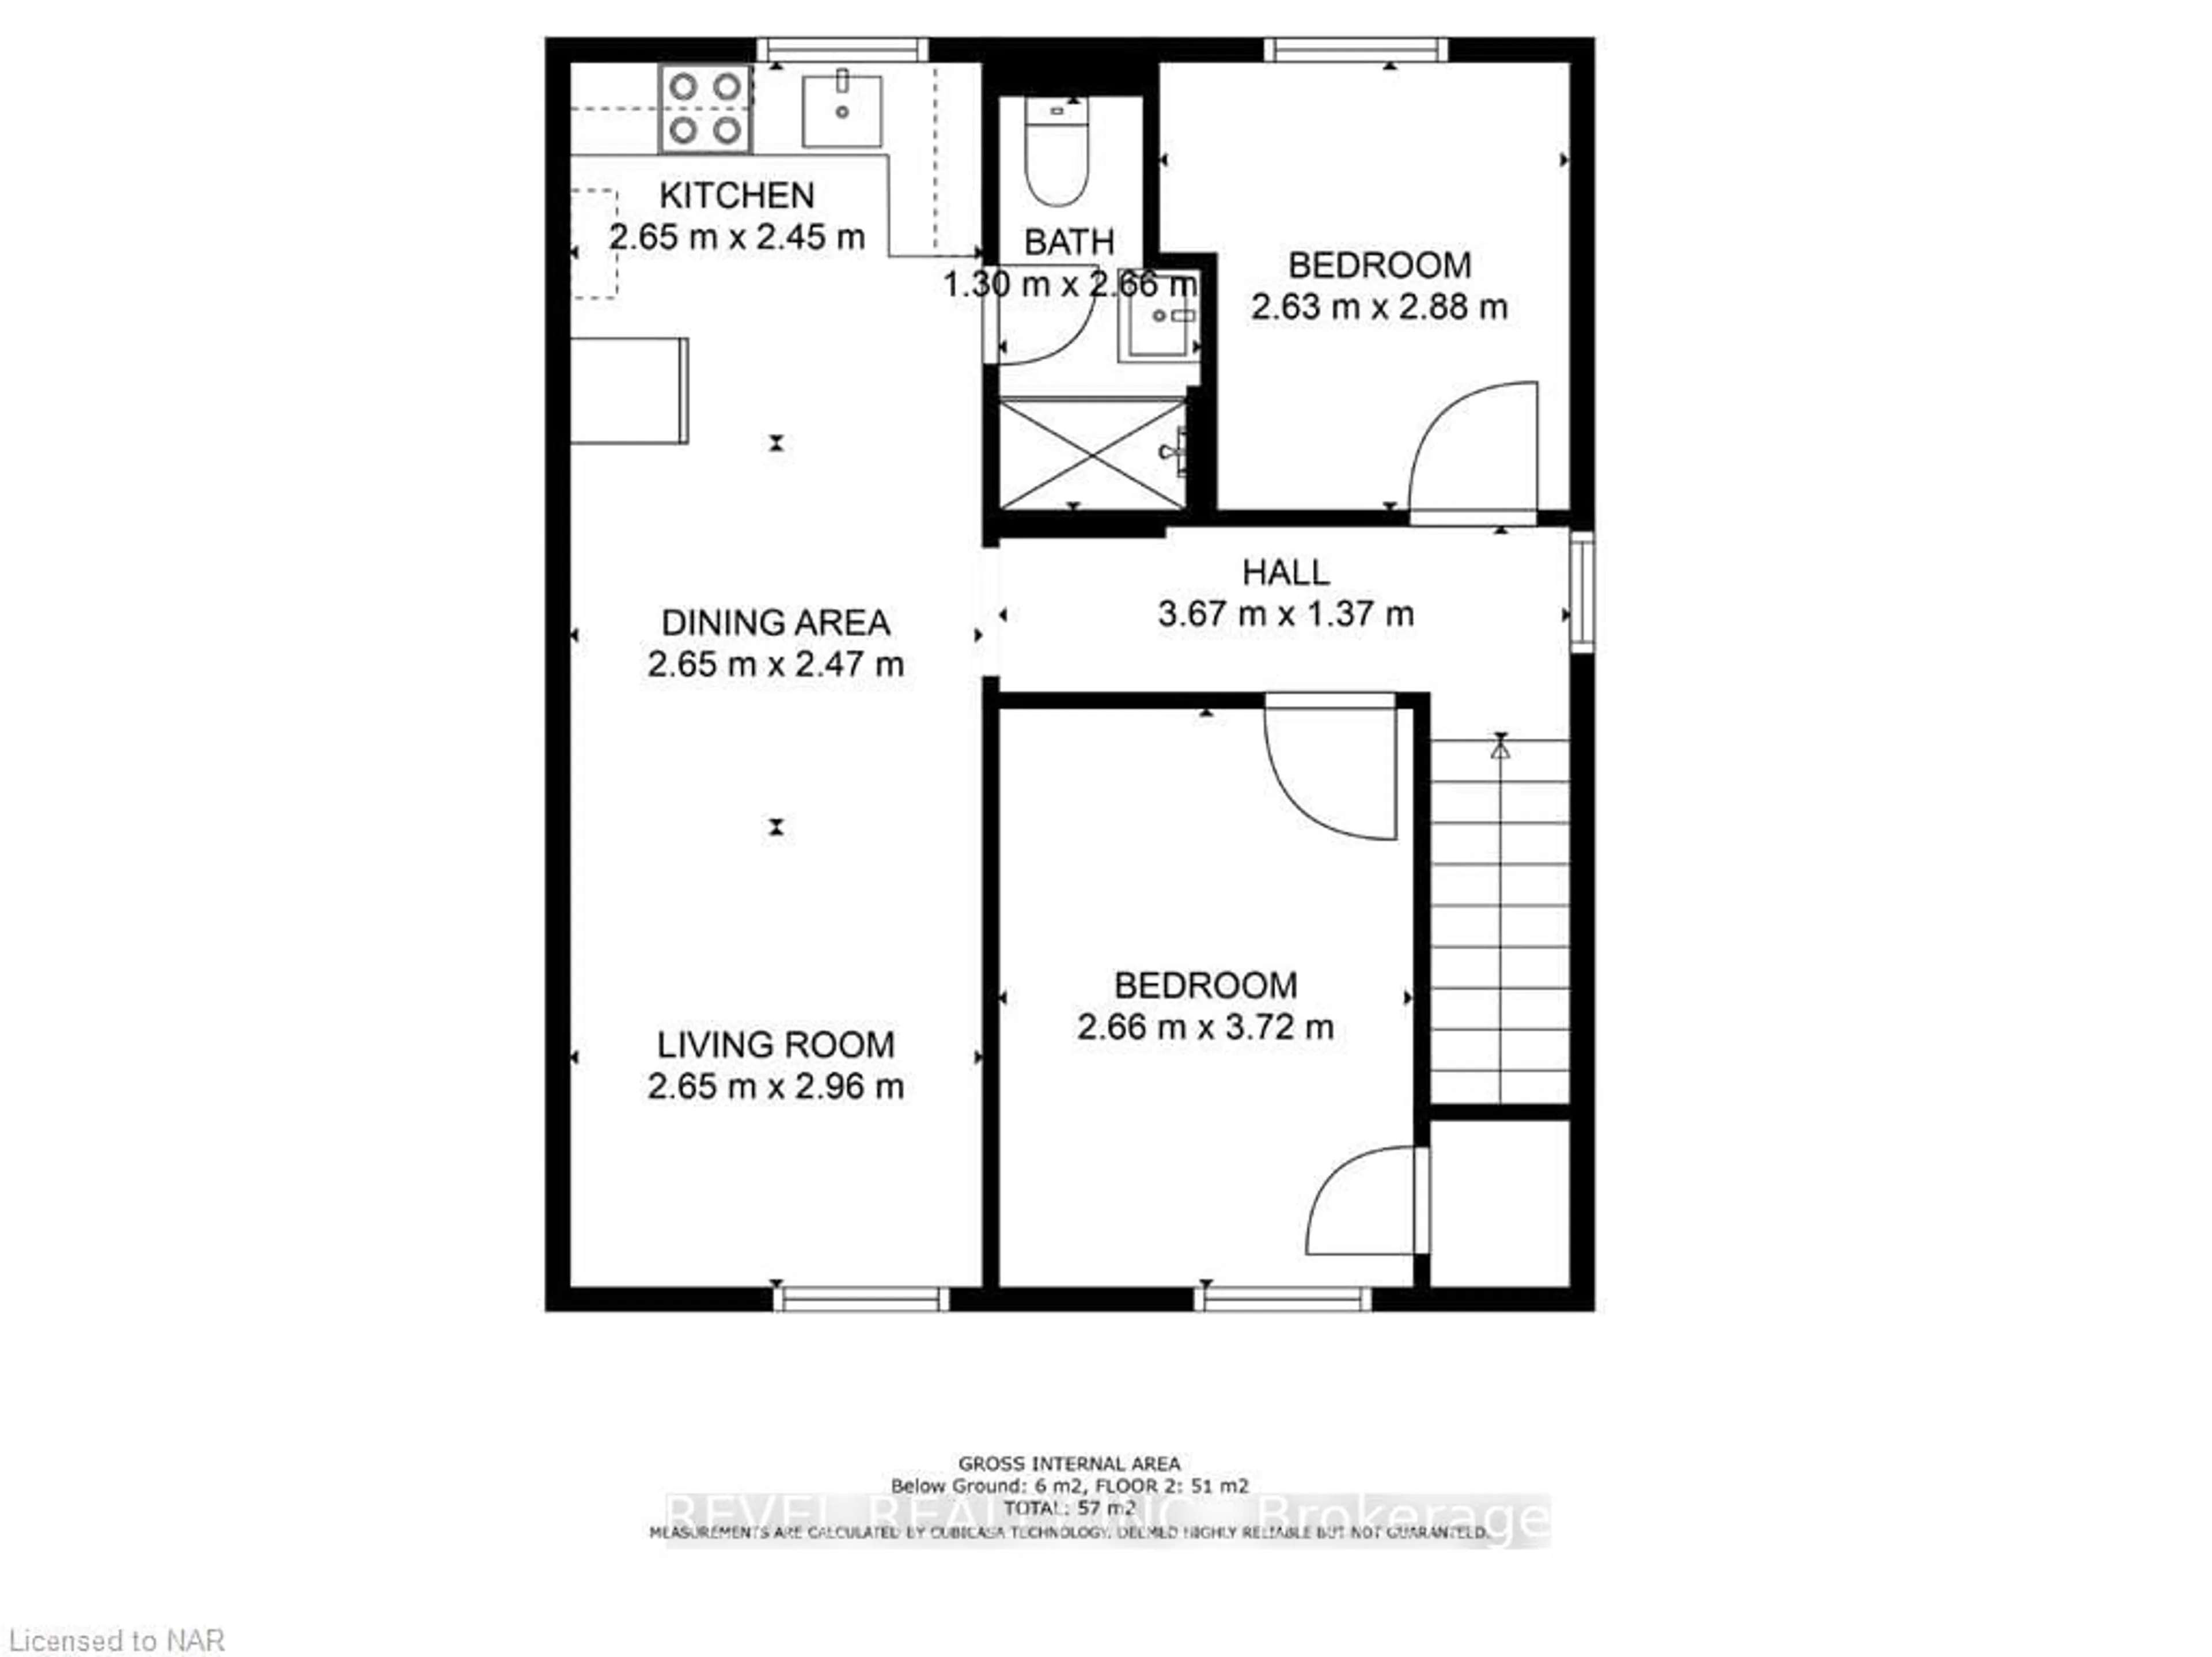 Floor plan for 5267 Mcrae St, Niagara Falls Ontario L2E 1P9